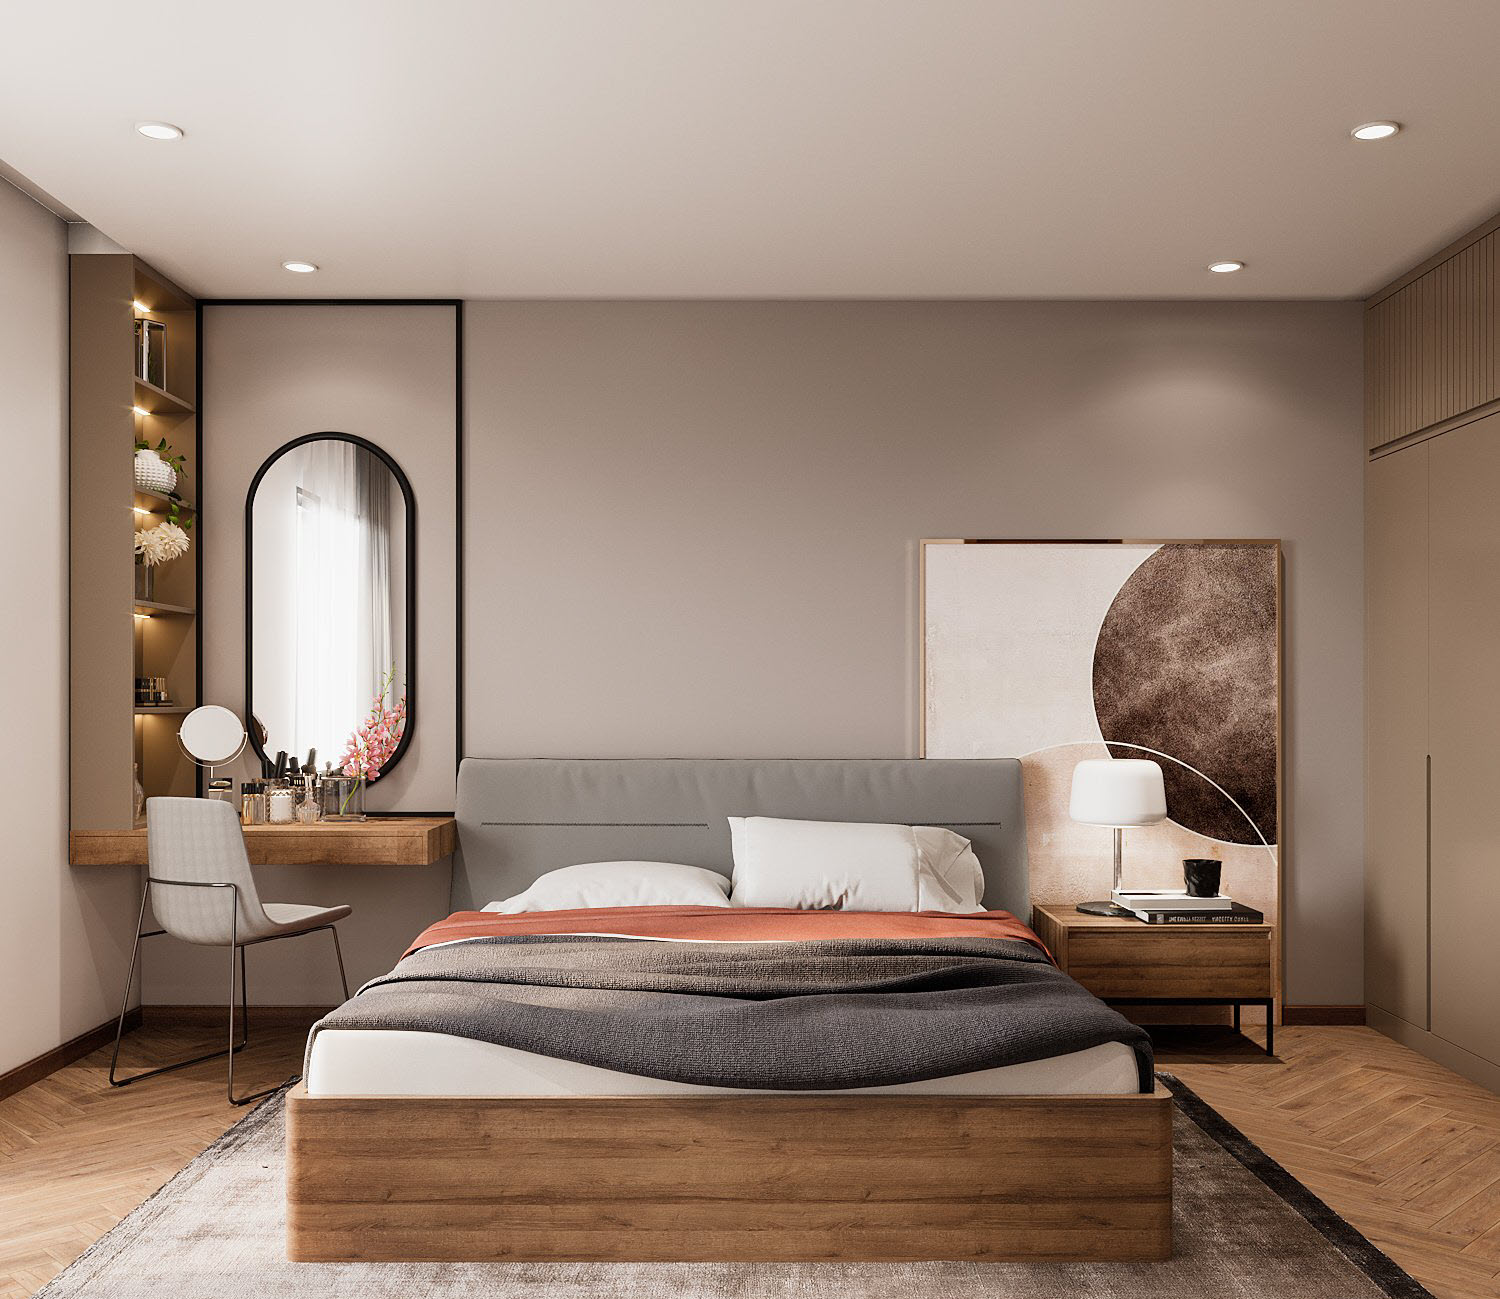 Phòng ngủ master được thiết kế với gam màu sáng nhẹ nhàng, decor đơn giản mà tinh tế, hấp dẫn với gương bầu dục gắn tường kết hợp cùng tranh tường nghệ thuật trừu tượng.